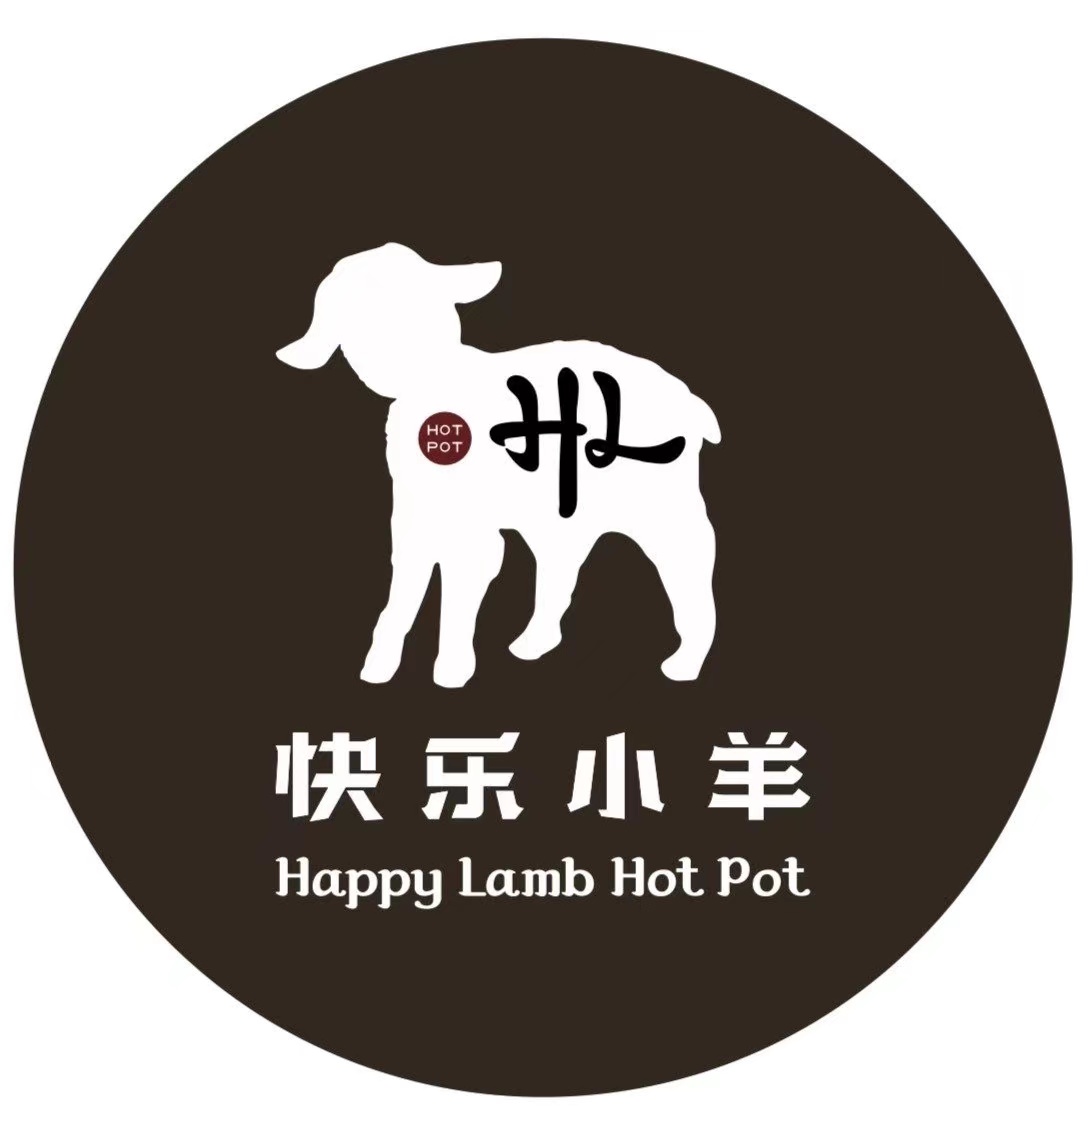 Happy lamb hot pot (warden) 